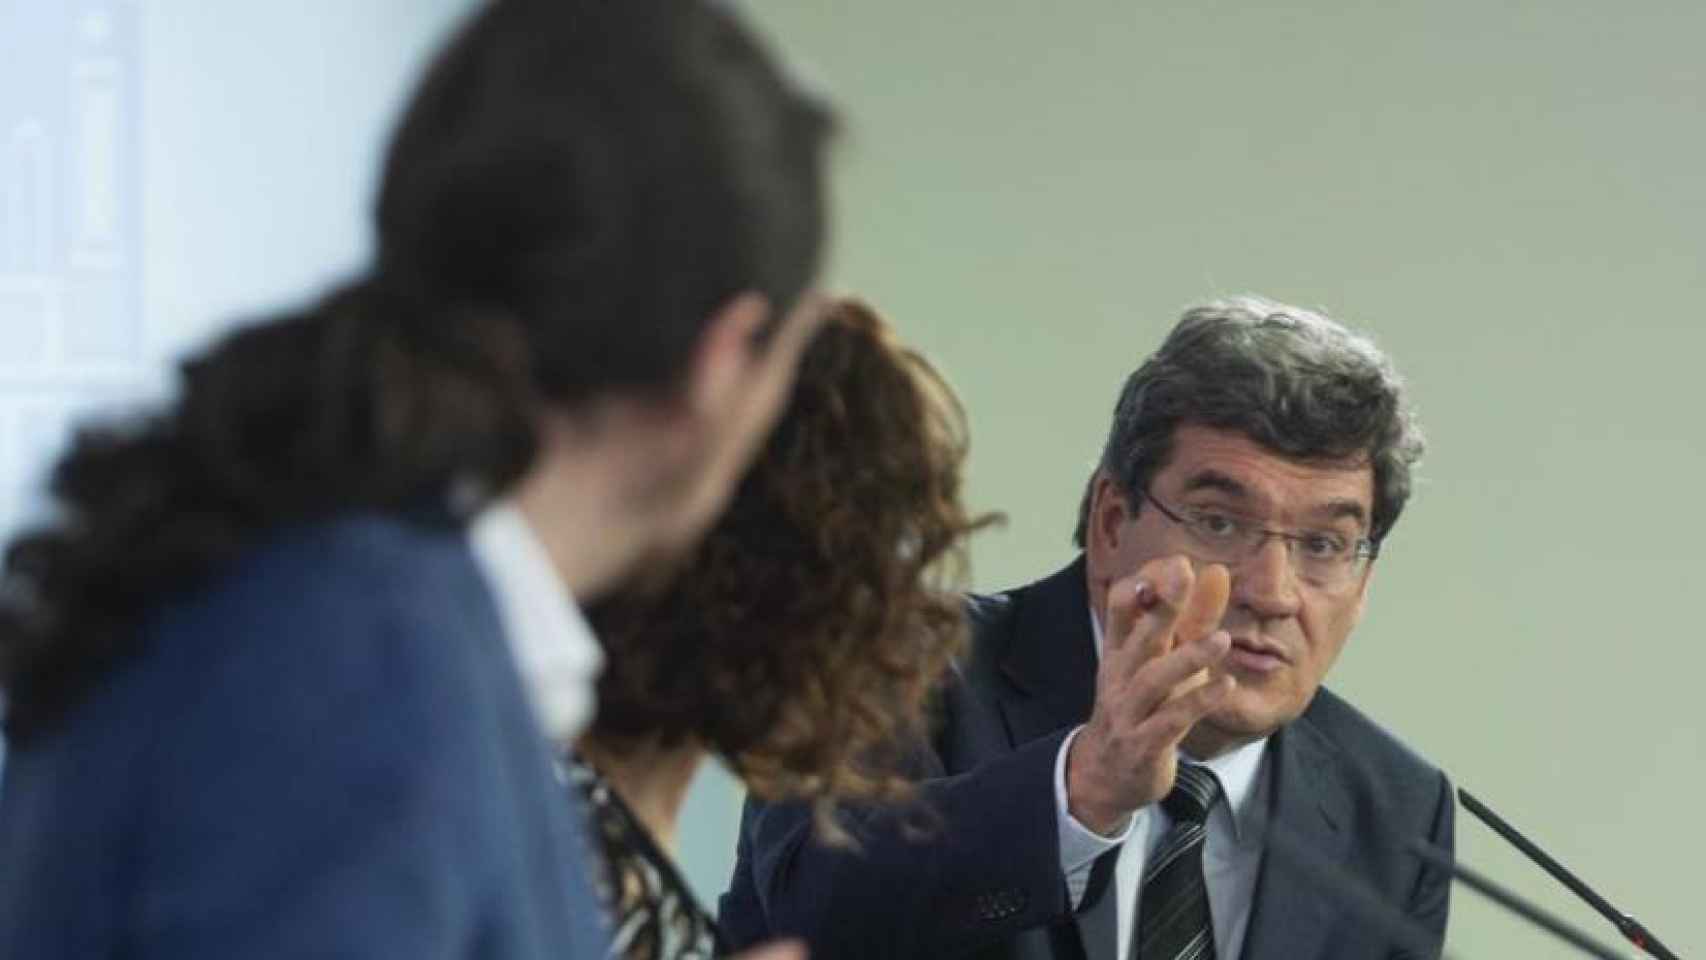 El ministro José Luis Escrivá apostilla al vicepresidente Pablo Iglesias, en presencia de la ministra María Jesús Montero.